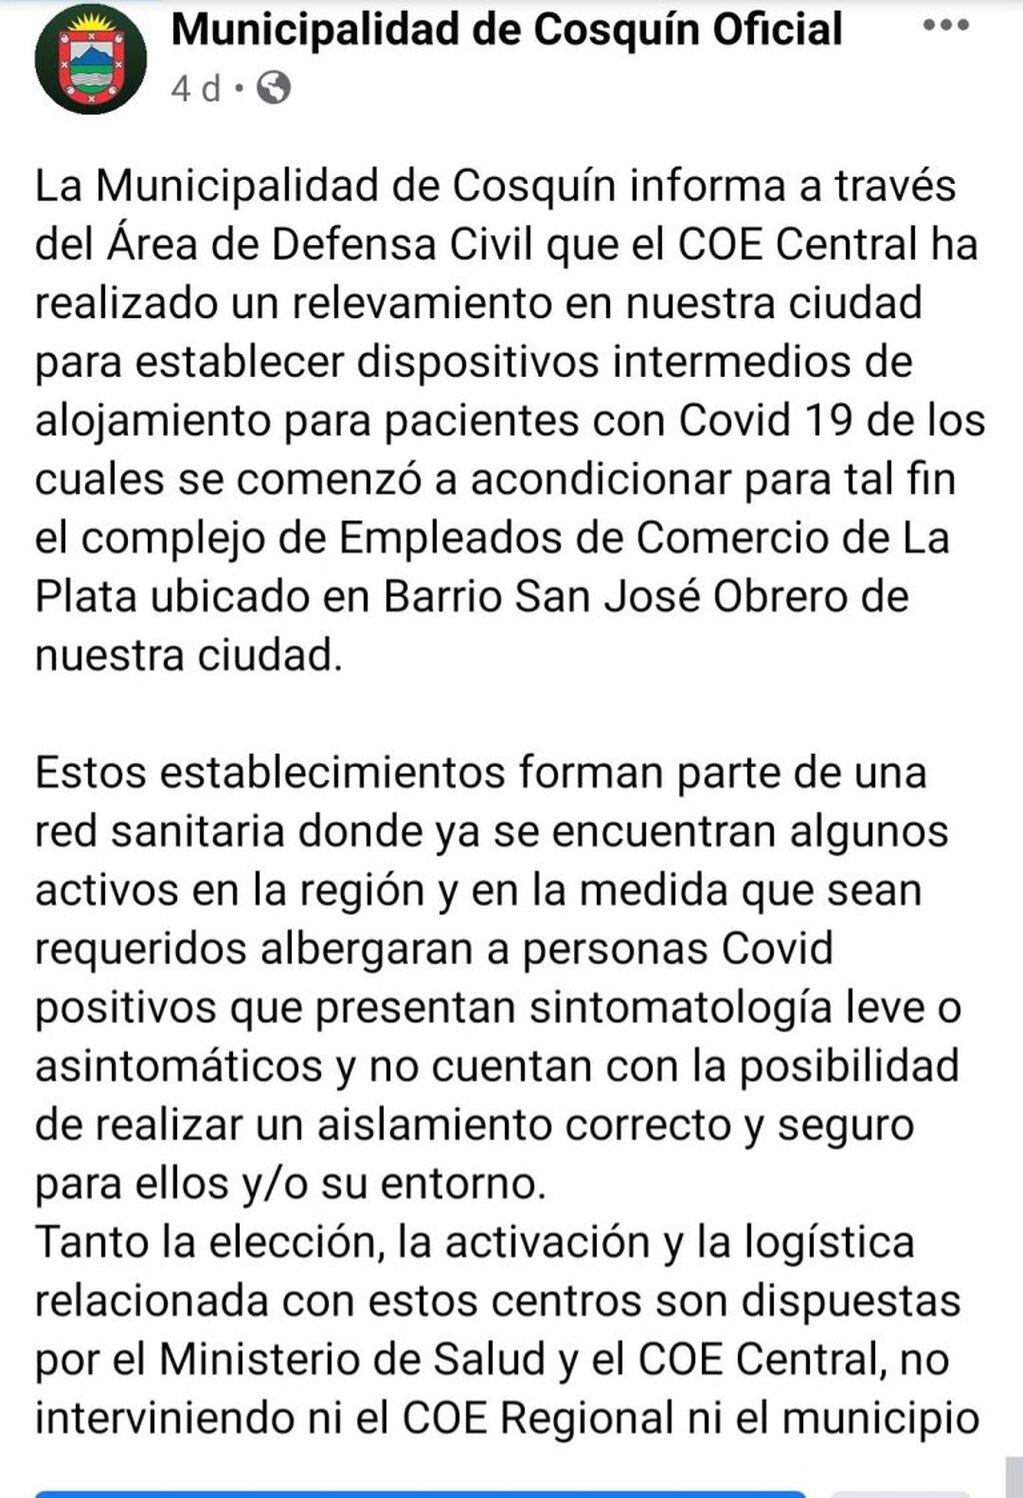 Comunicado difundido por el Municipio de Cosquín el pasado jueves 23 de julio.